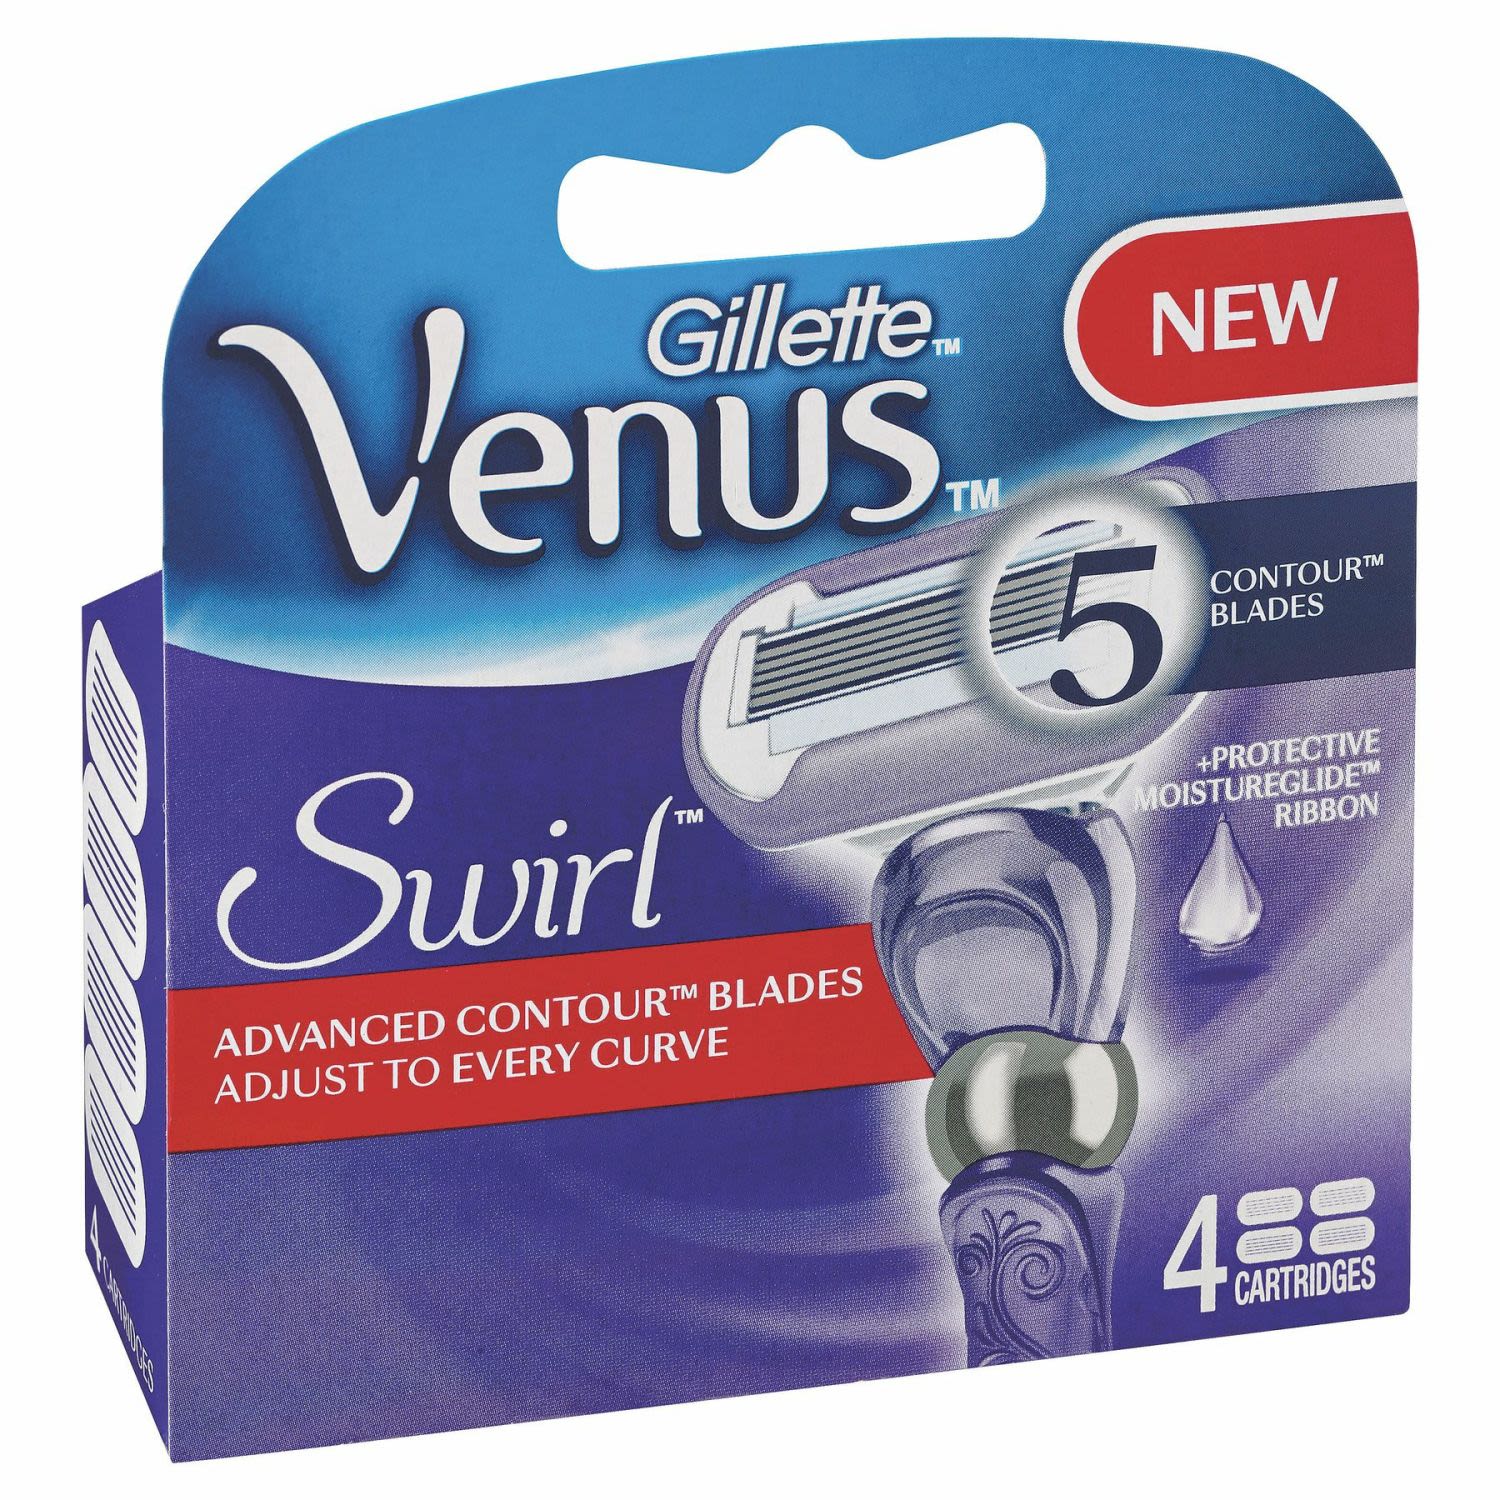 Gillette Venus Extra Smooth Swirl Razor Blade Refills, 4 Each